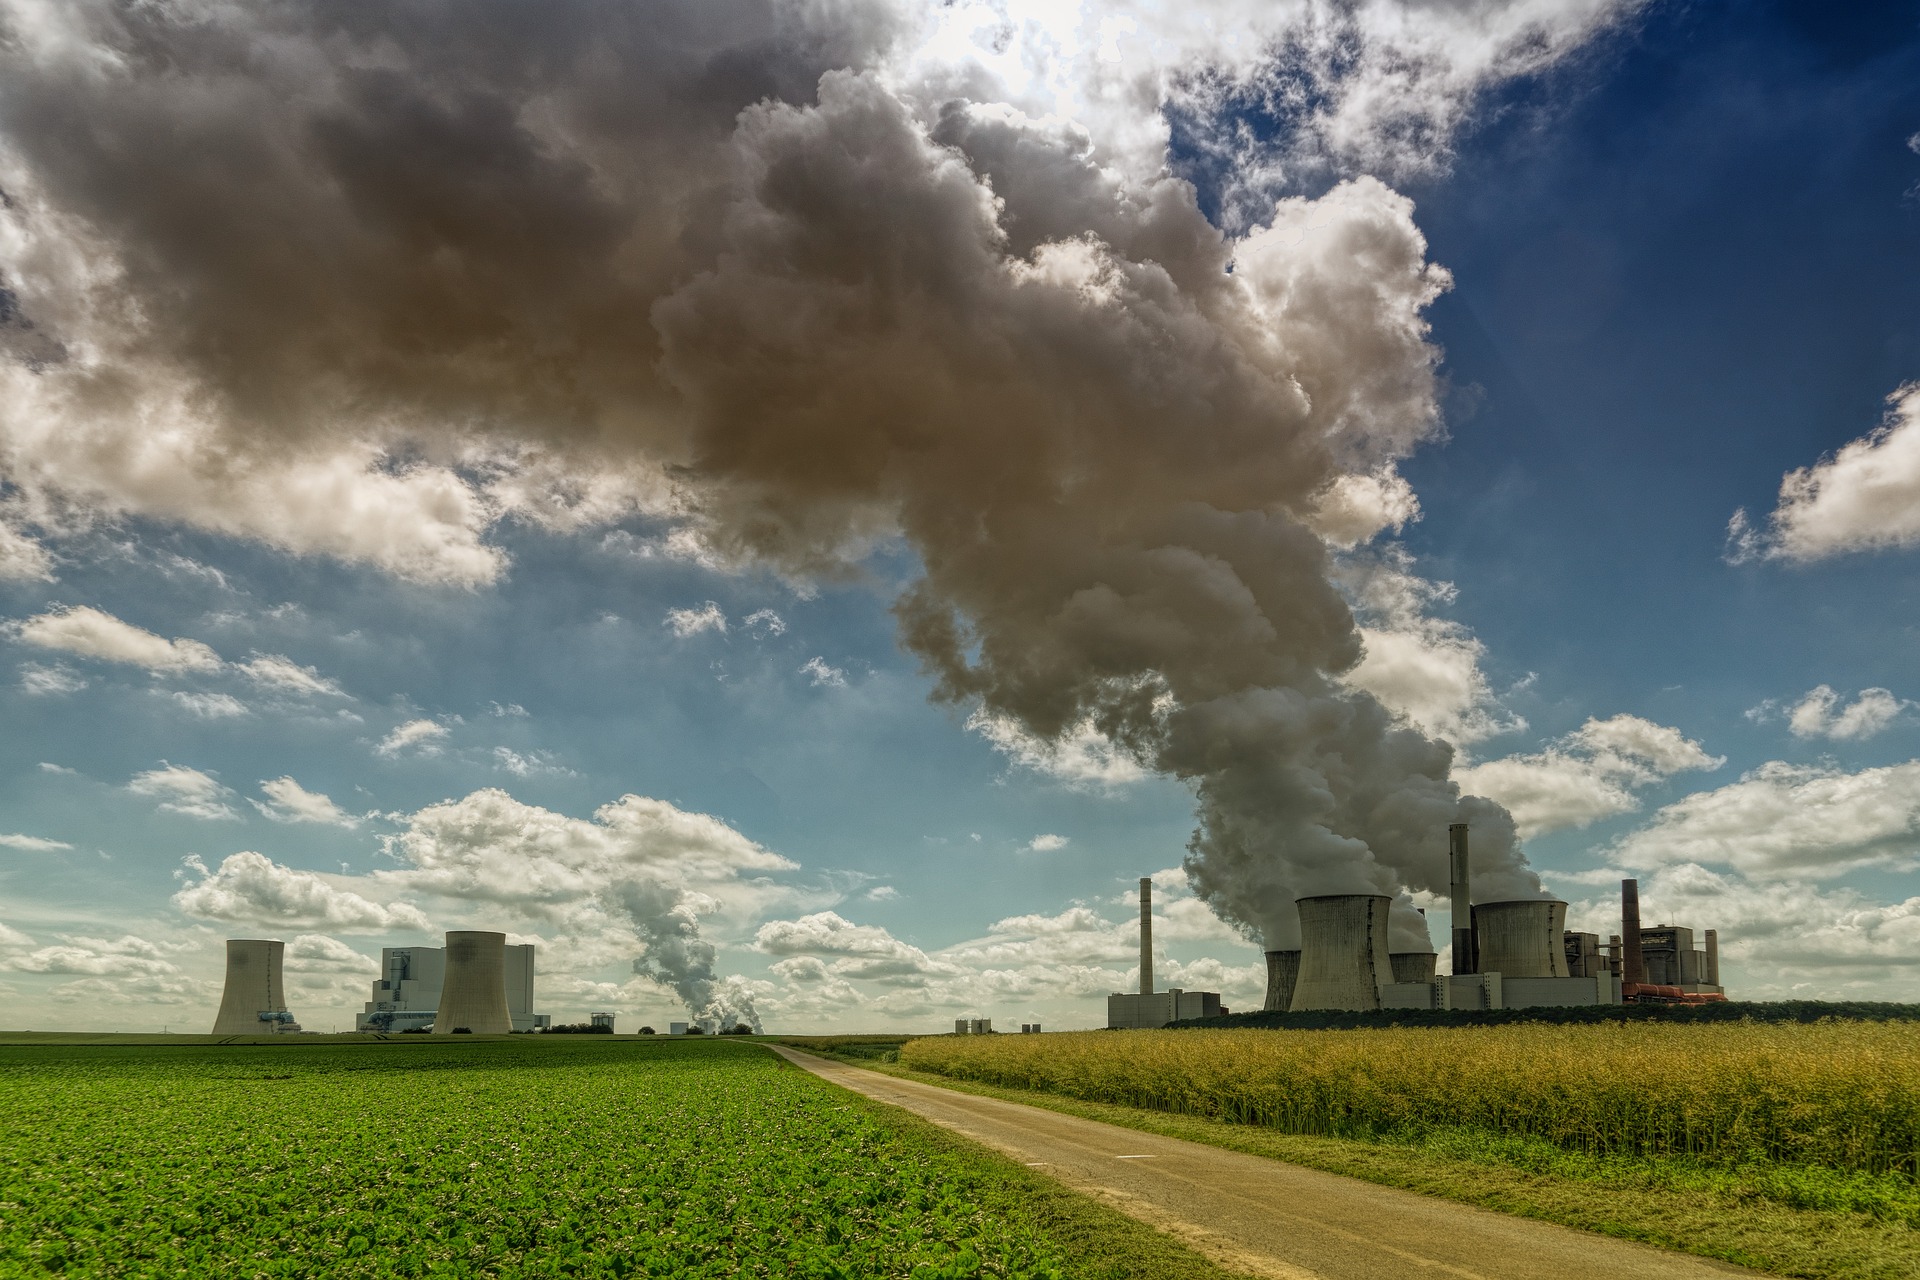 Mais de 95% do consumo mundial de carvão ocorre em países com compromissos net zero, mostra relatório. Na imagem: Usina termelétrica a carvão, com chaminés lançando enorme volume de fumaça poluente na atmosfera (Foto: Joe/Pixabay)